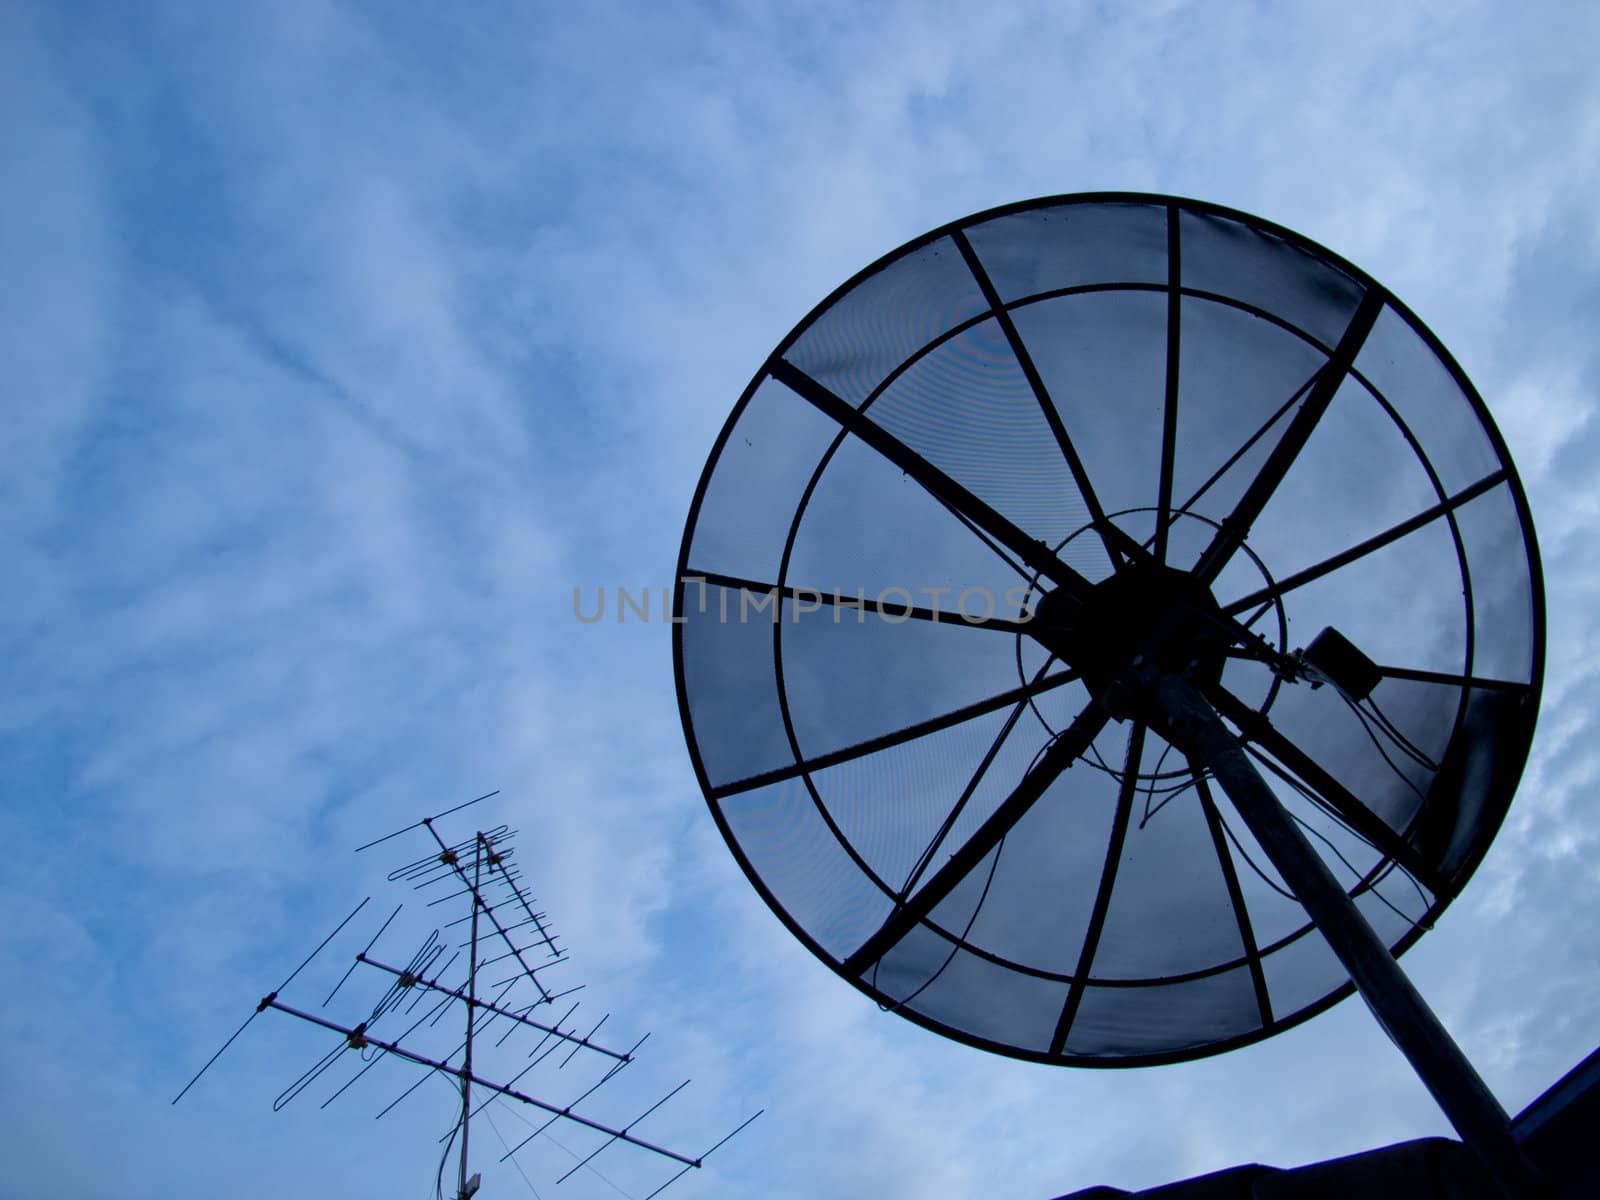 Antenna & Dish by dul_ny